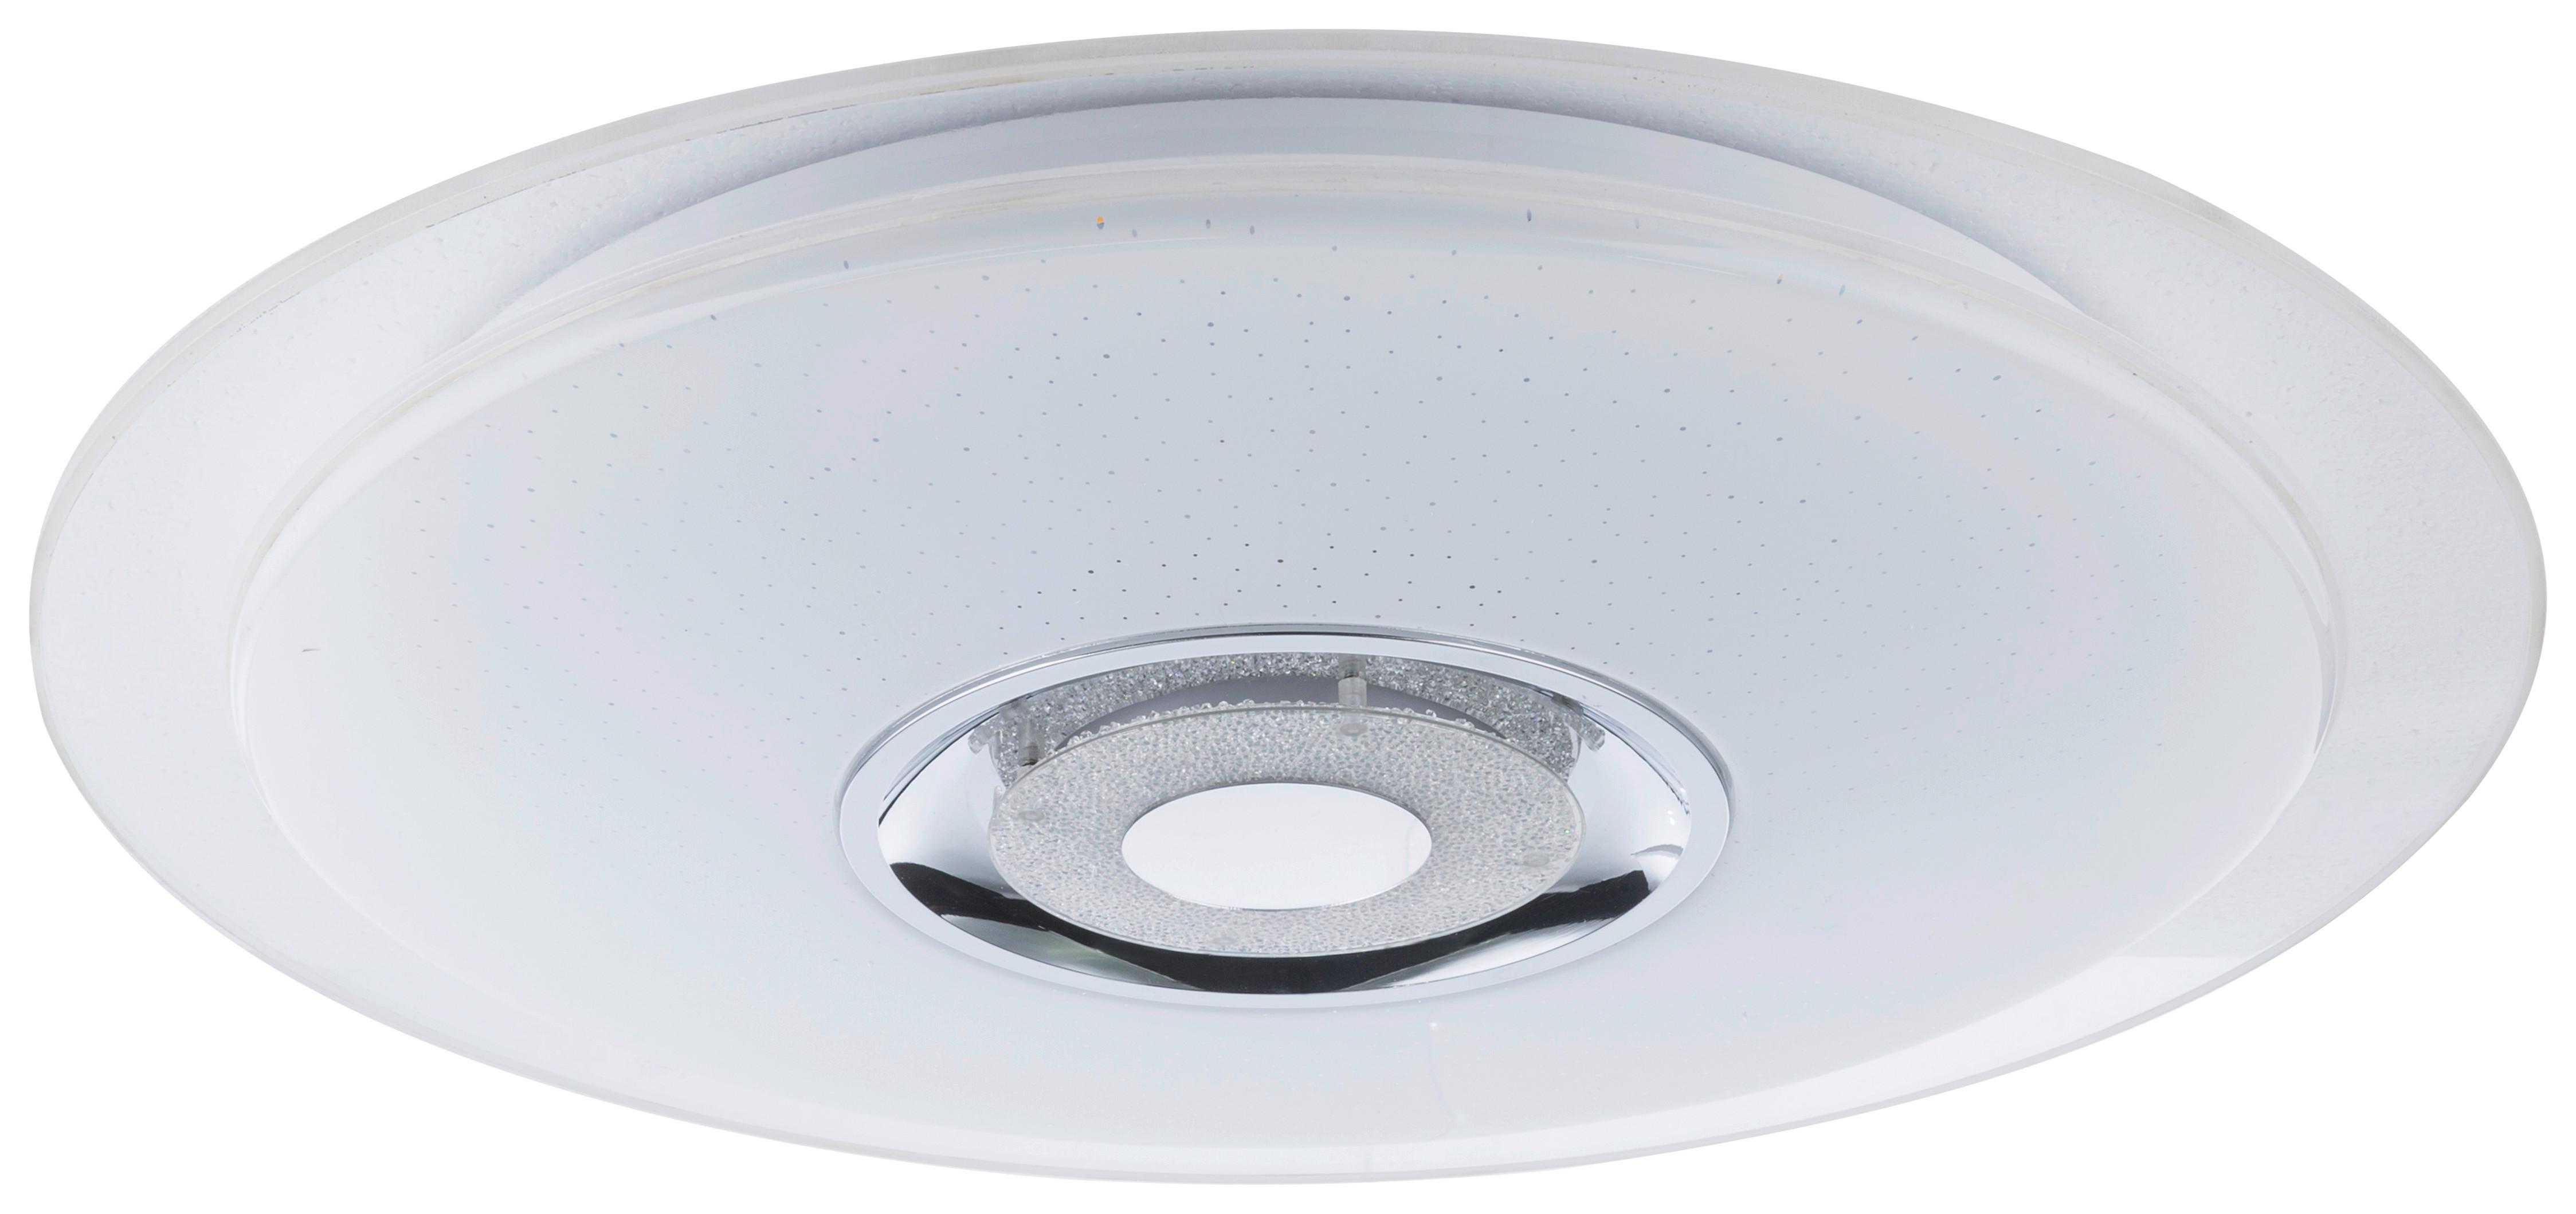 LED-Deckenleuchte Ø 47,5 cm mit Farbwechsler und Bluetooth - Opal/Weiß, MODERN, Kunststoff/Metall (47,5/5,7cm)